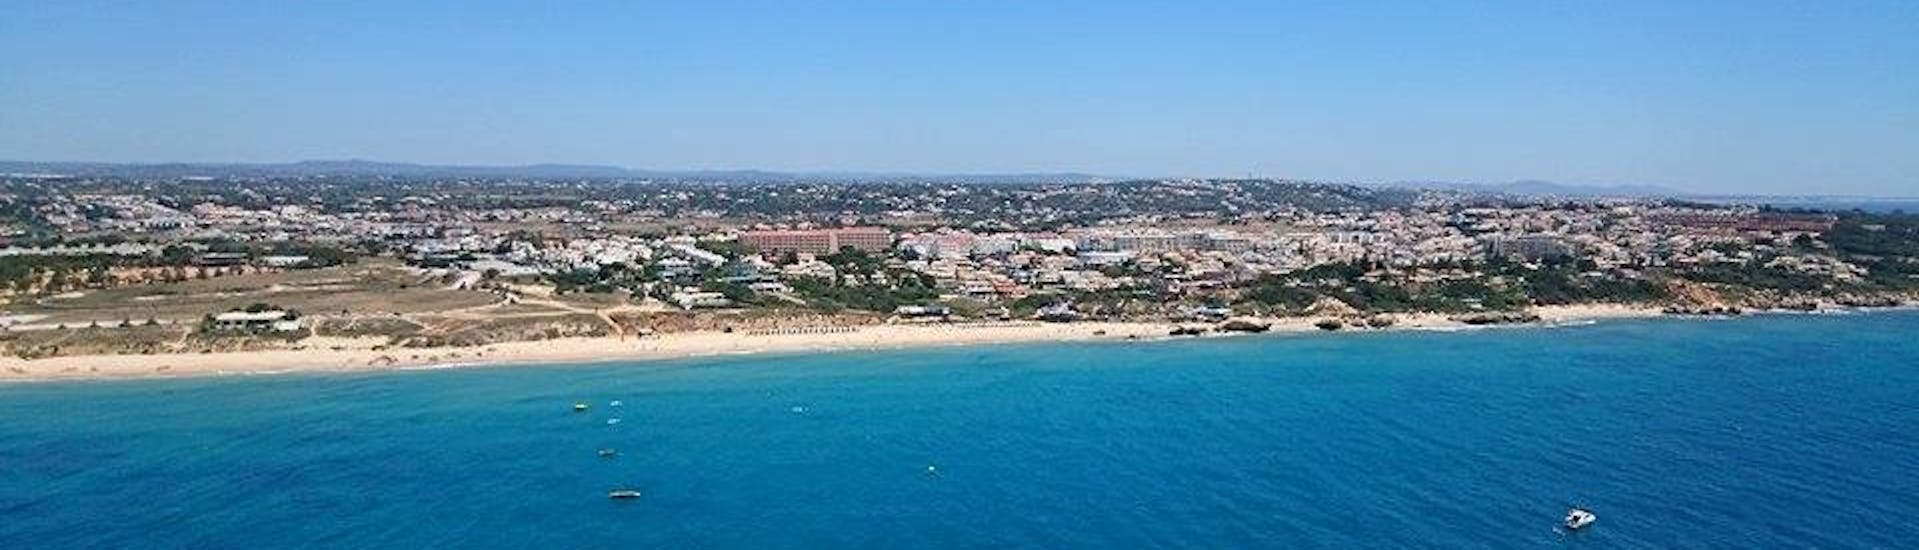 La côte d'Algarve et la plage d'Albufeira vu du ciel que les participants peuvent admirer lors de la Balade en kayak de mer depuis la plage de Galé avec Nautifun Galé.